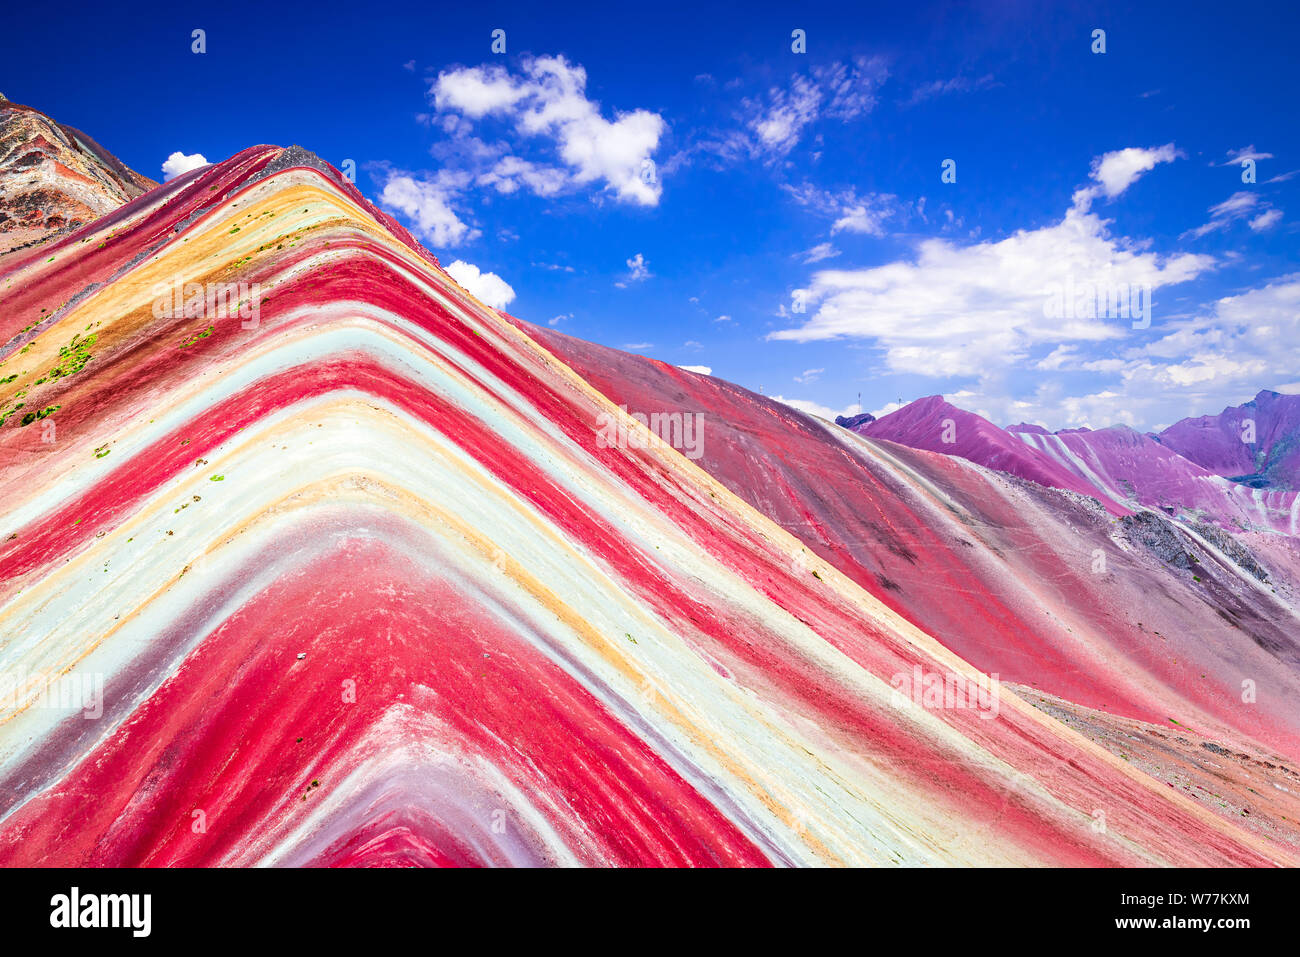 Vinicunca, Perù - Rainbow Mountain, Cordillera de los Andes, regione di Cusco in Sud America. Foto Stock